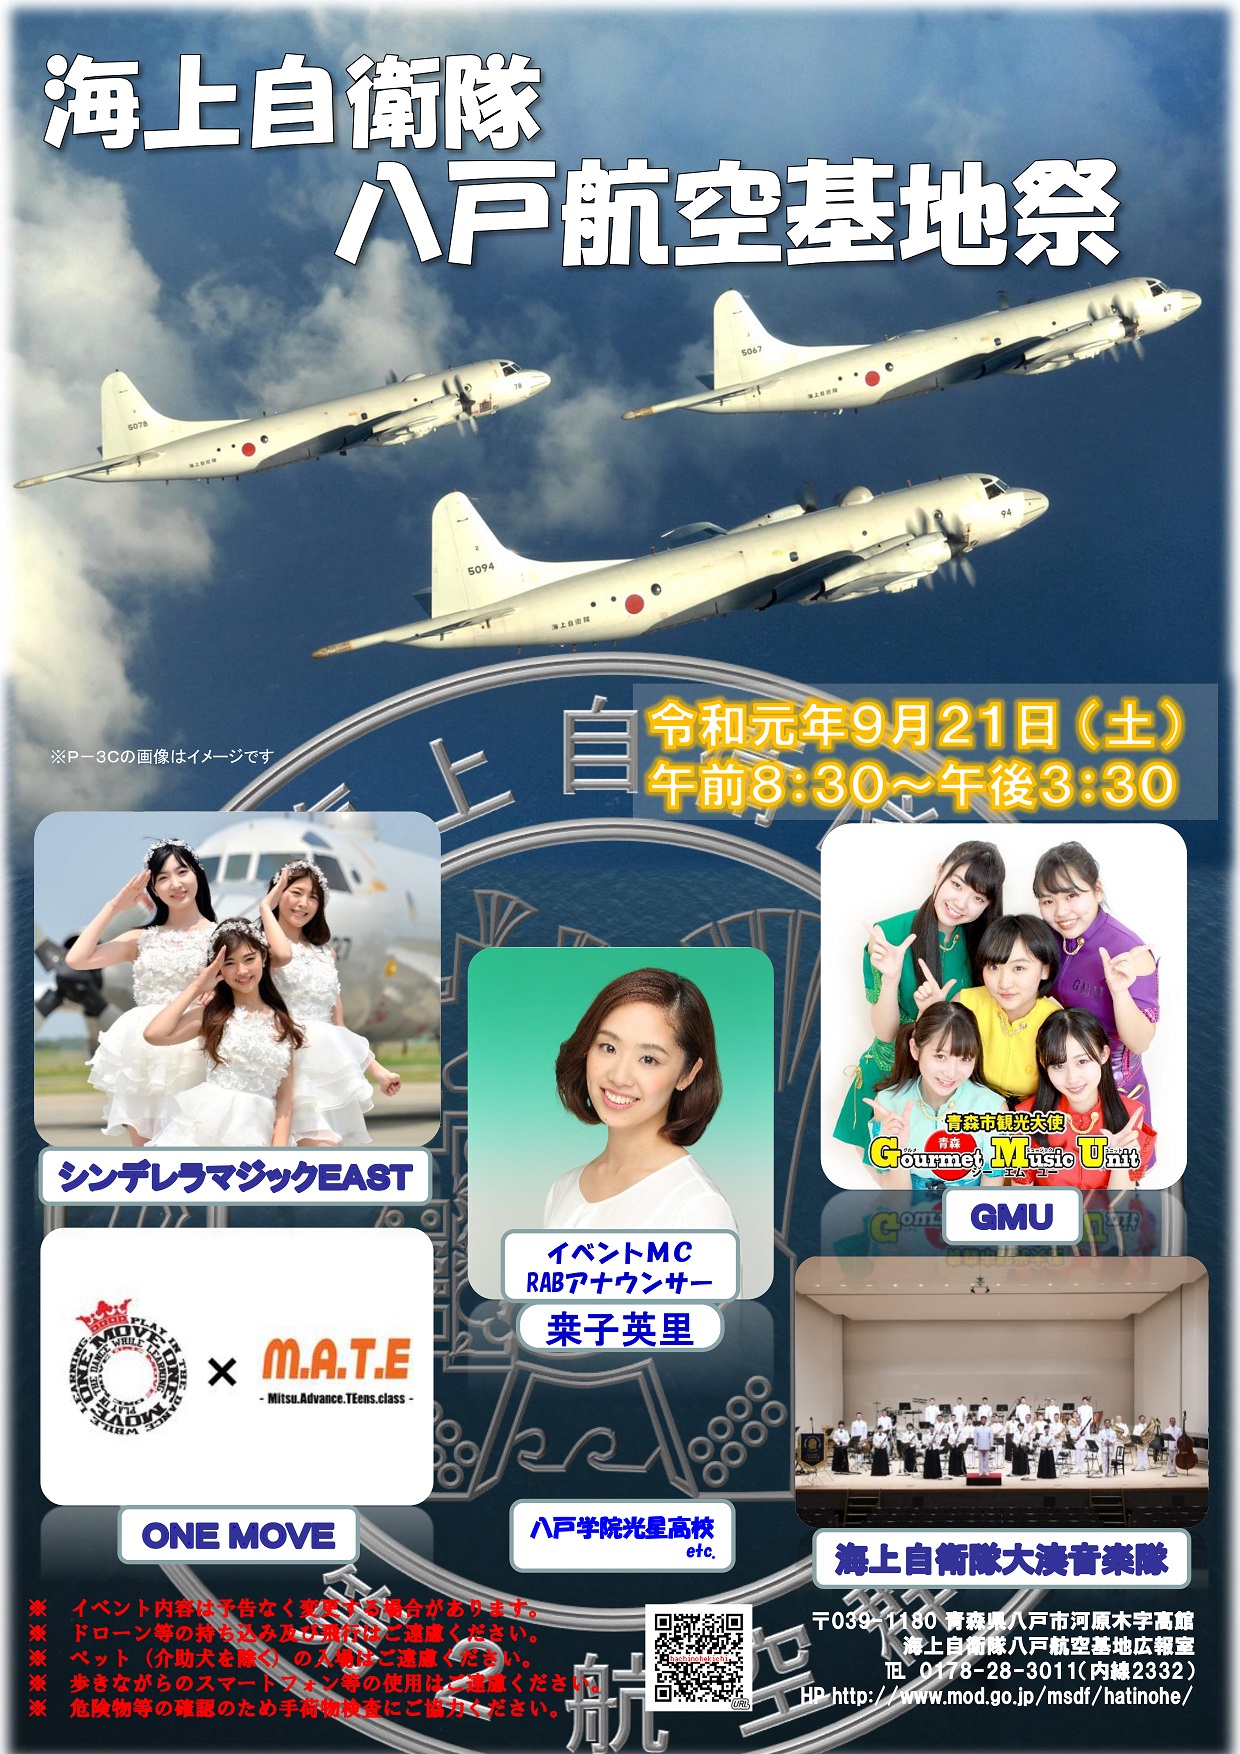 八戸航空基地祭2019ポスター